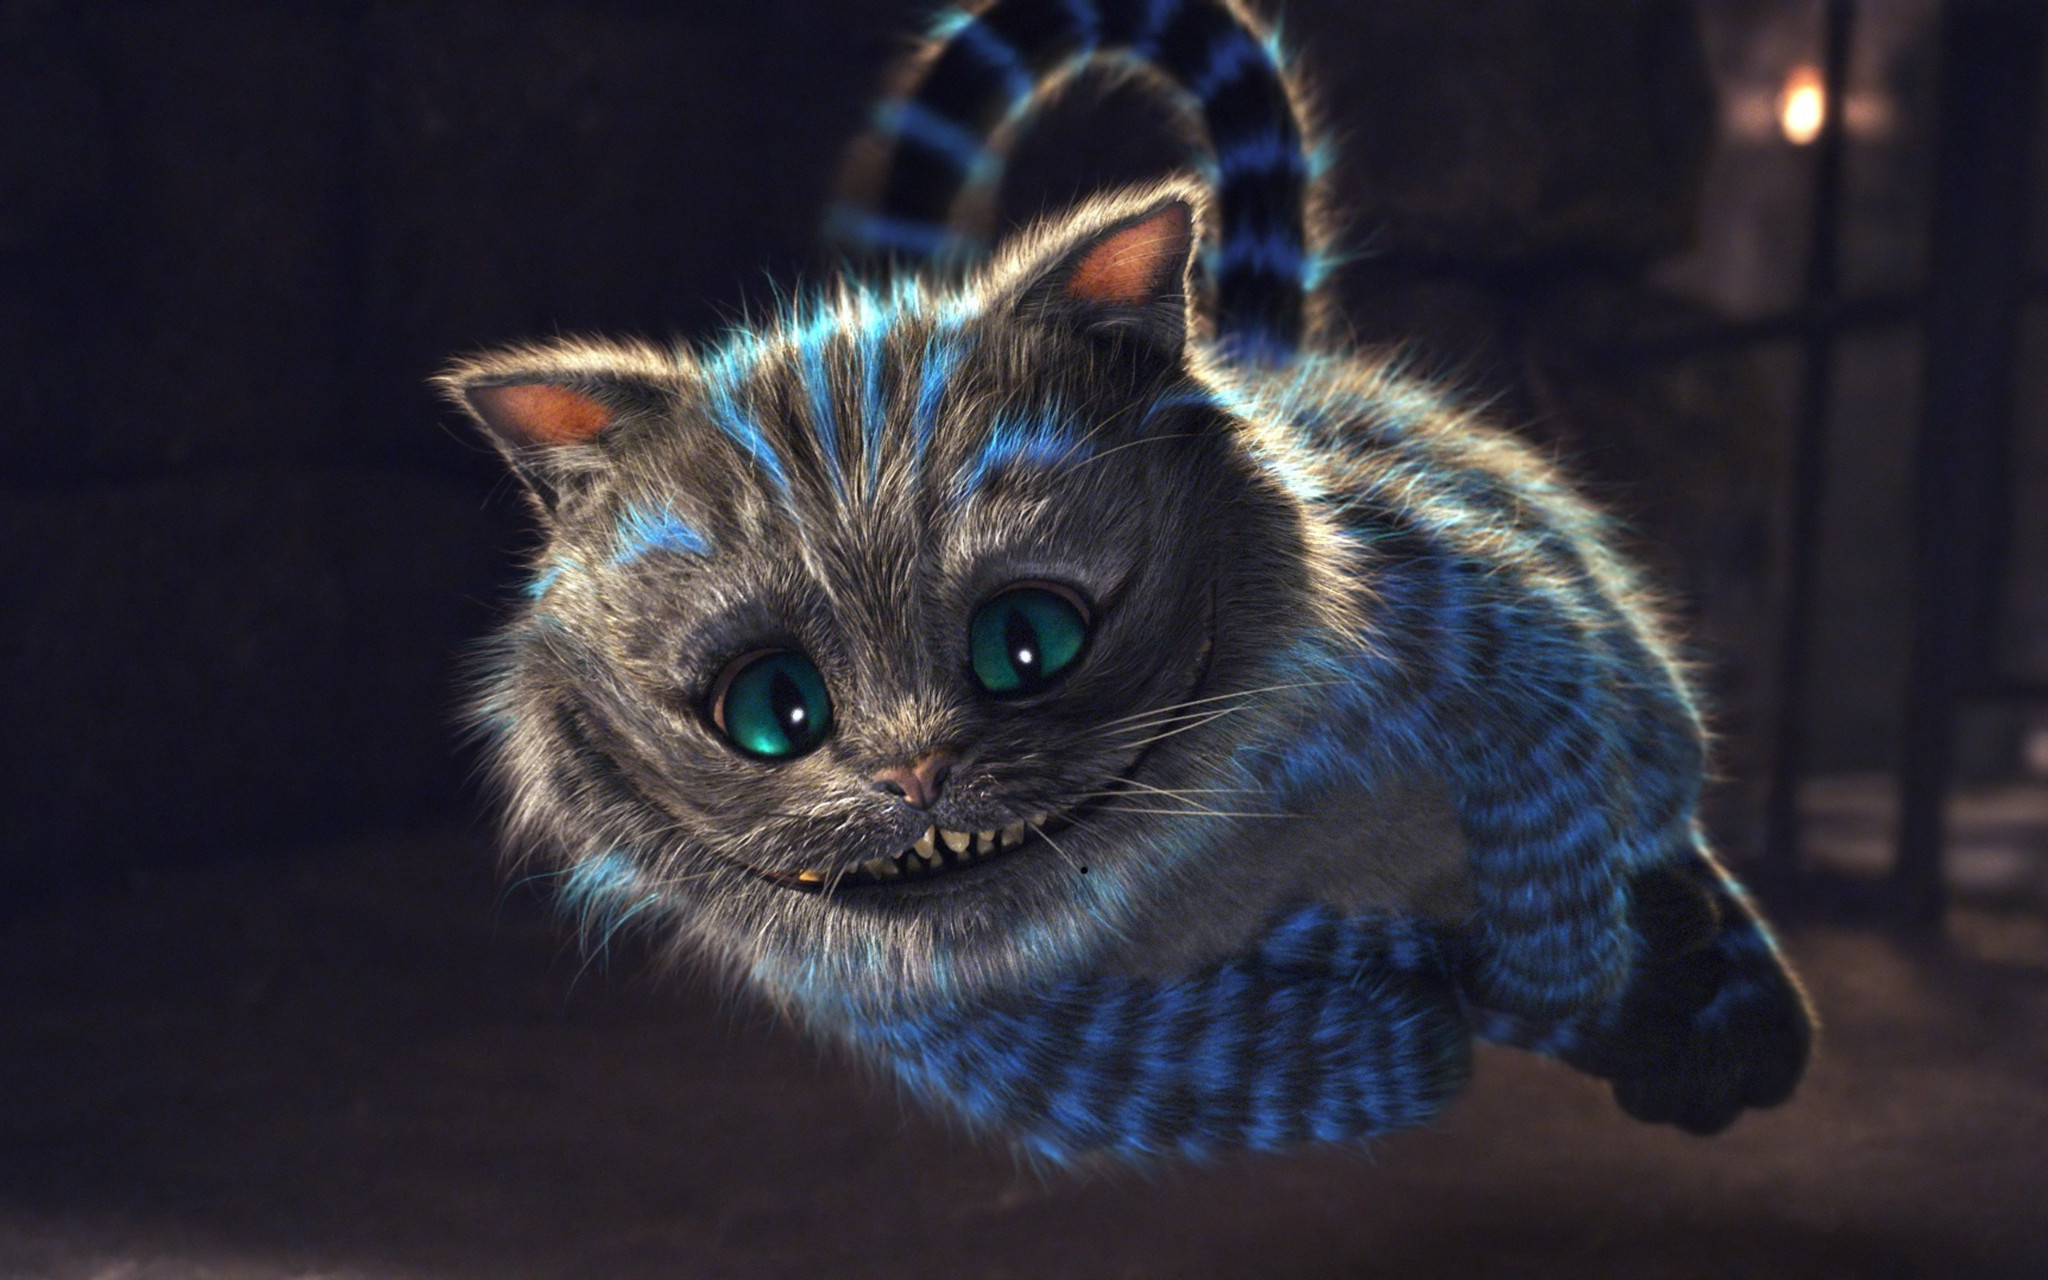 The Cheshire Cat Es Un Personaje Ficticio Creado Por Lewis Carroll En